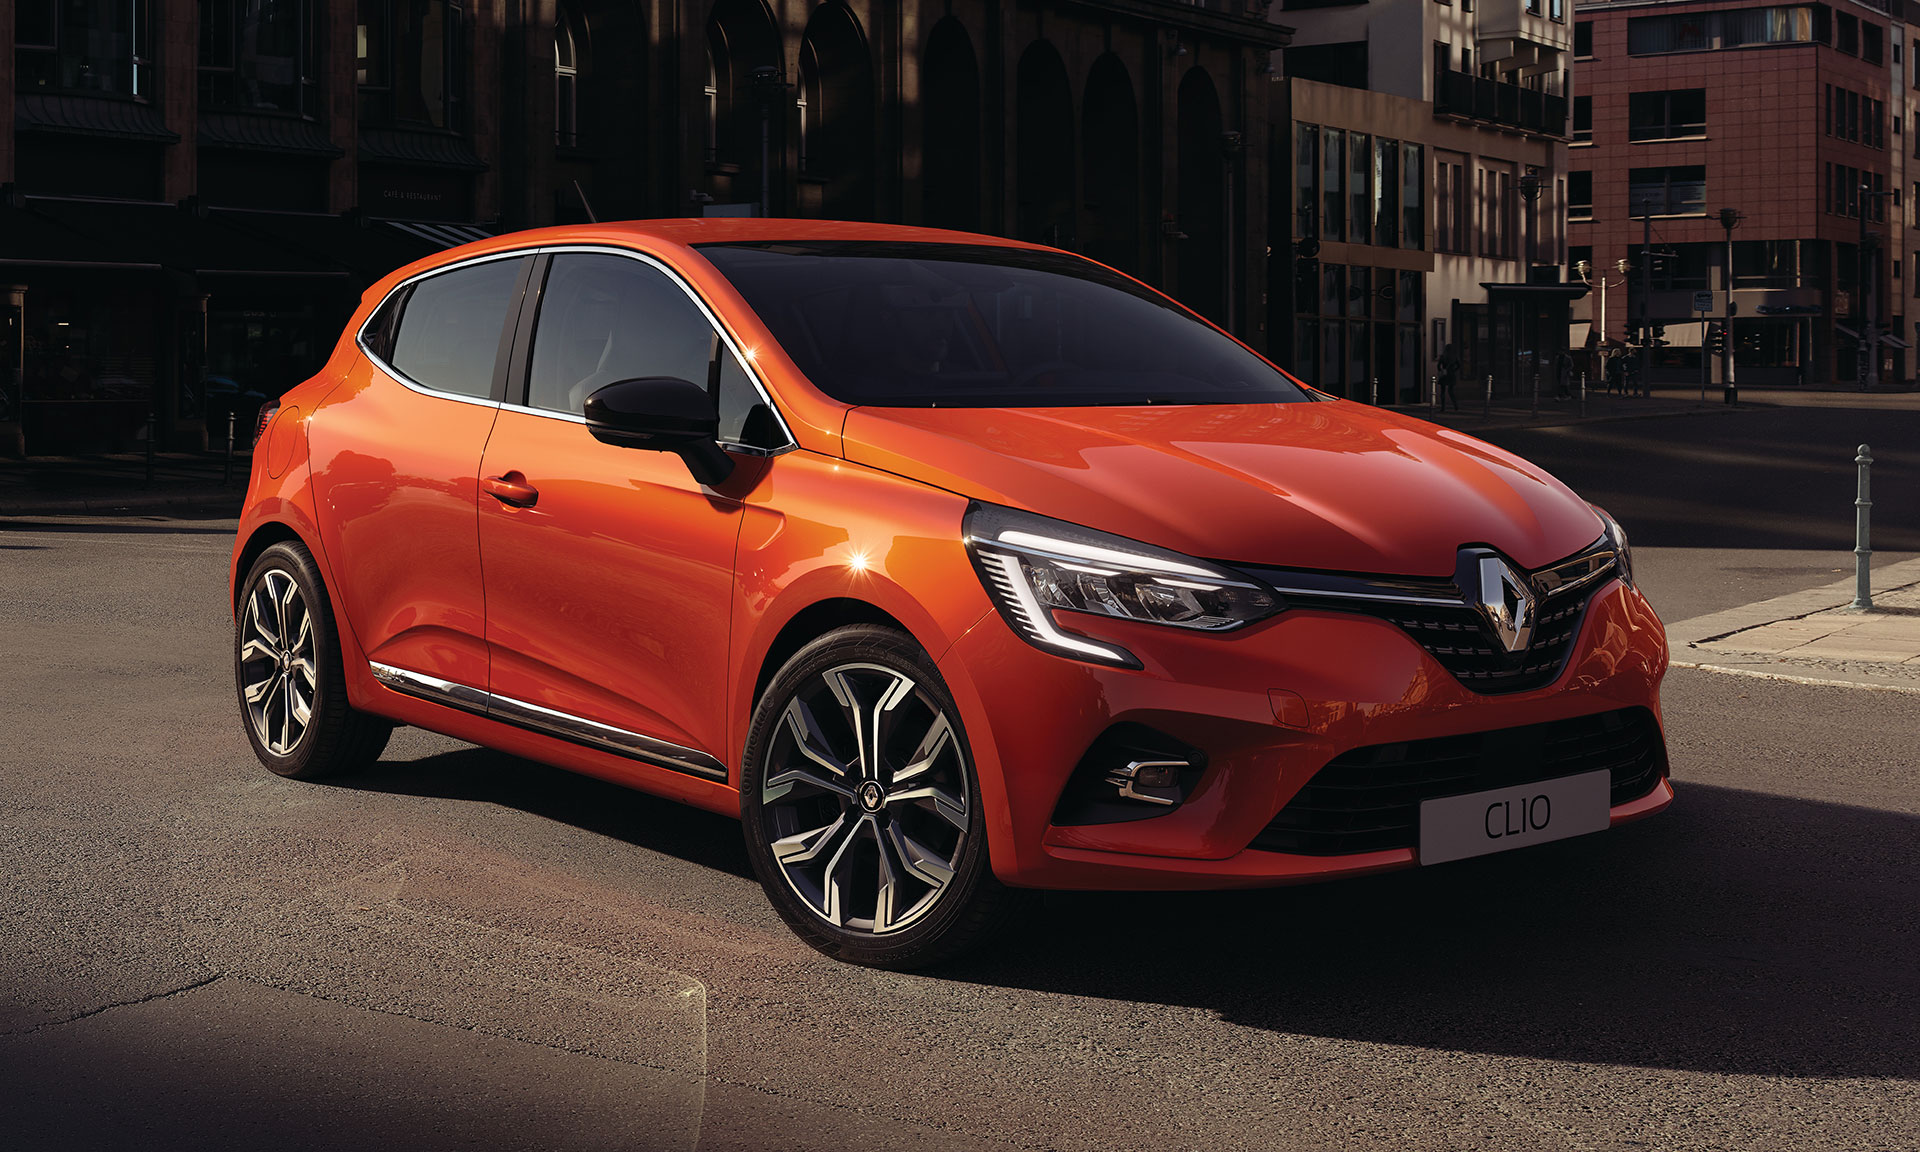 Renault představil pátou generaci vozu Clio s propracovanějším designem